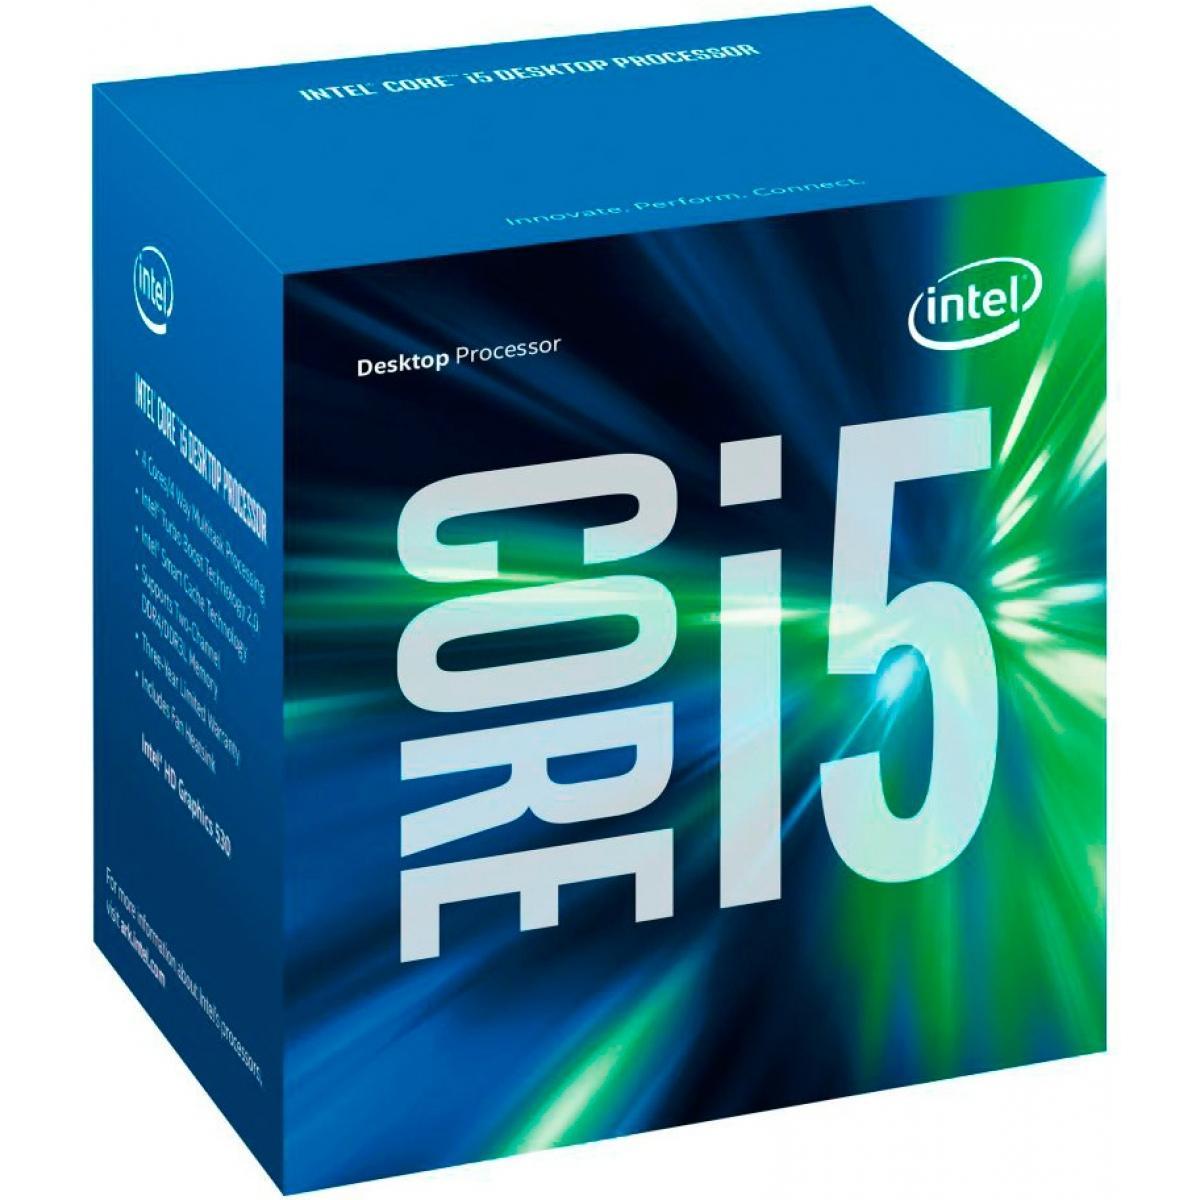 Pc Gamer Barato Completo Intel I5